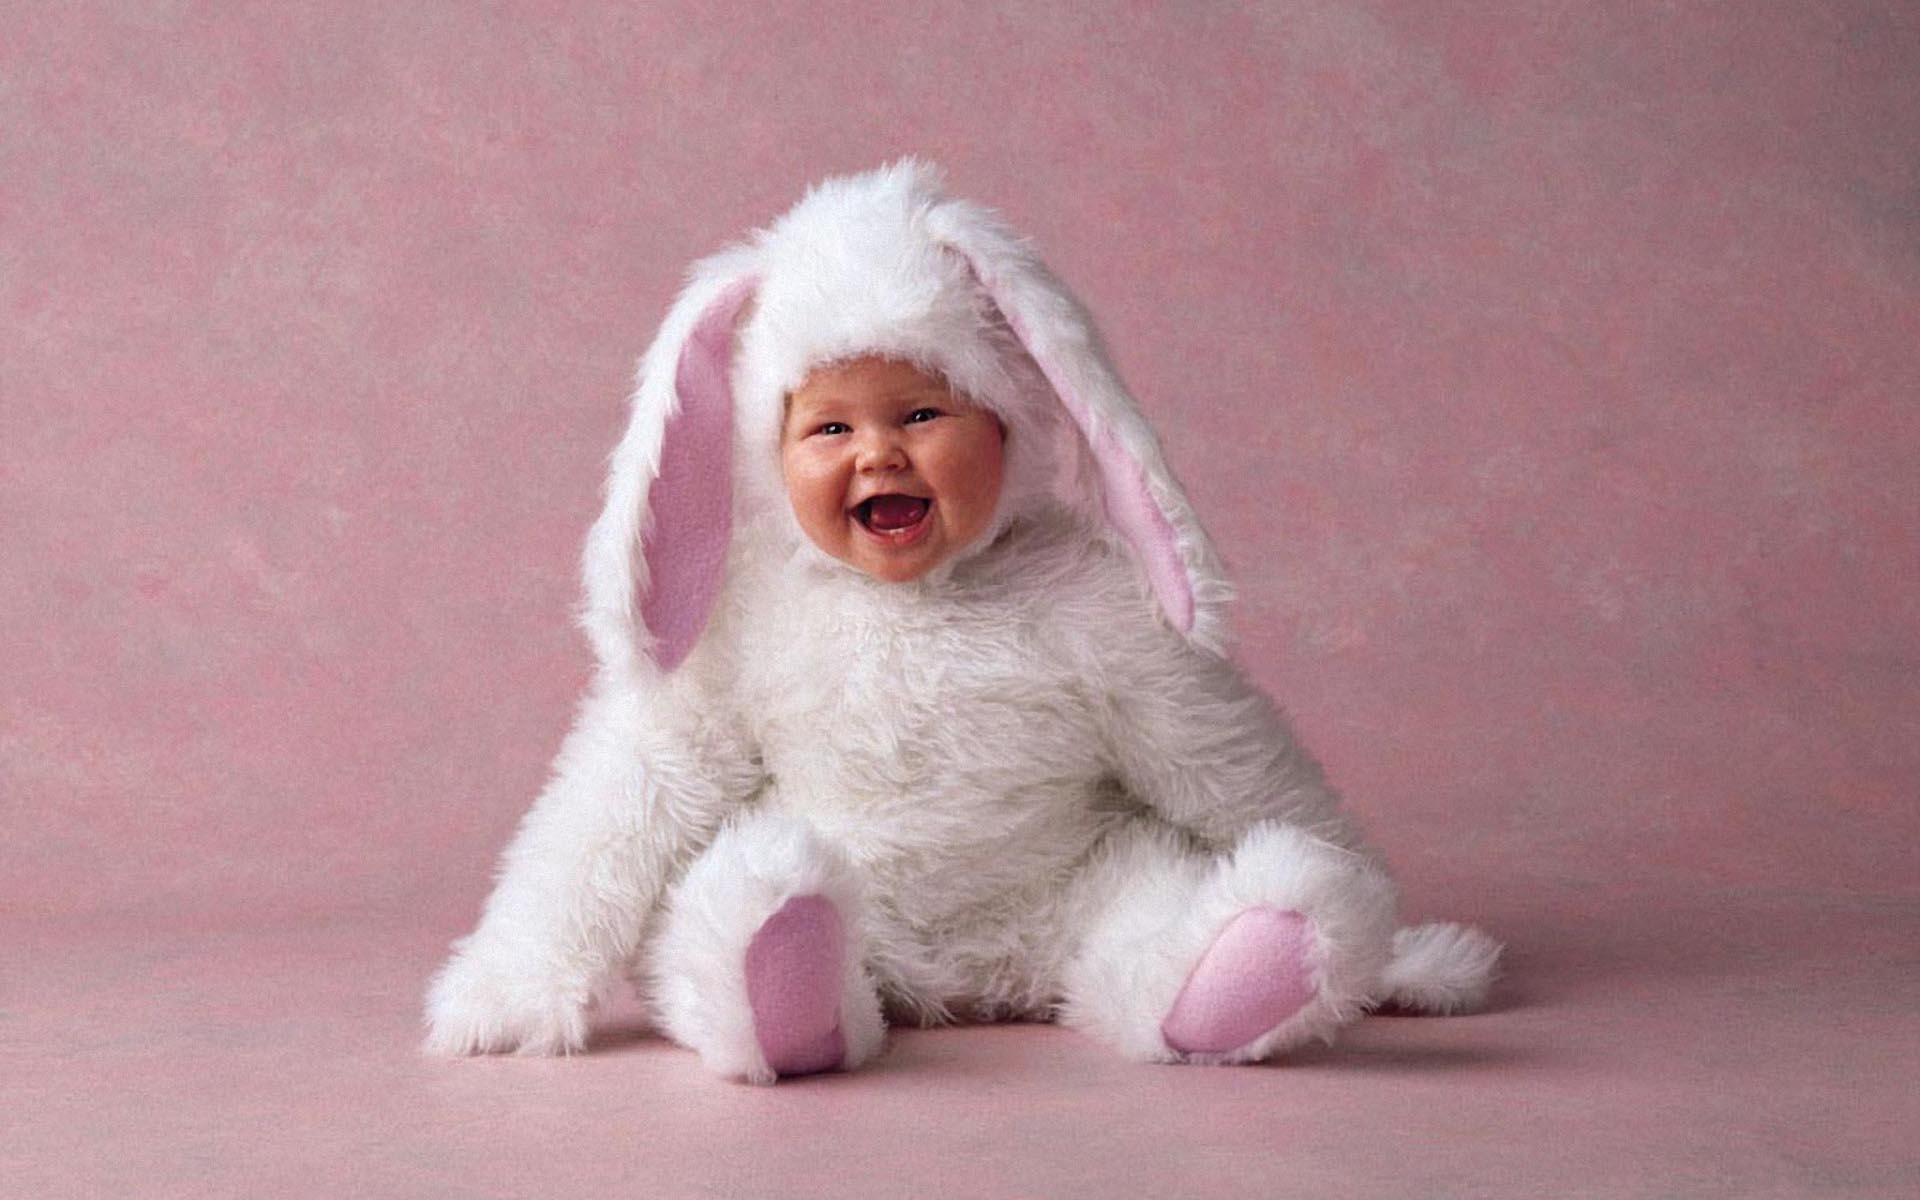 Малыш в костюме зайца